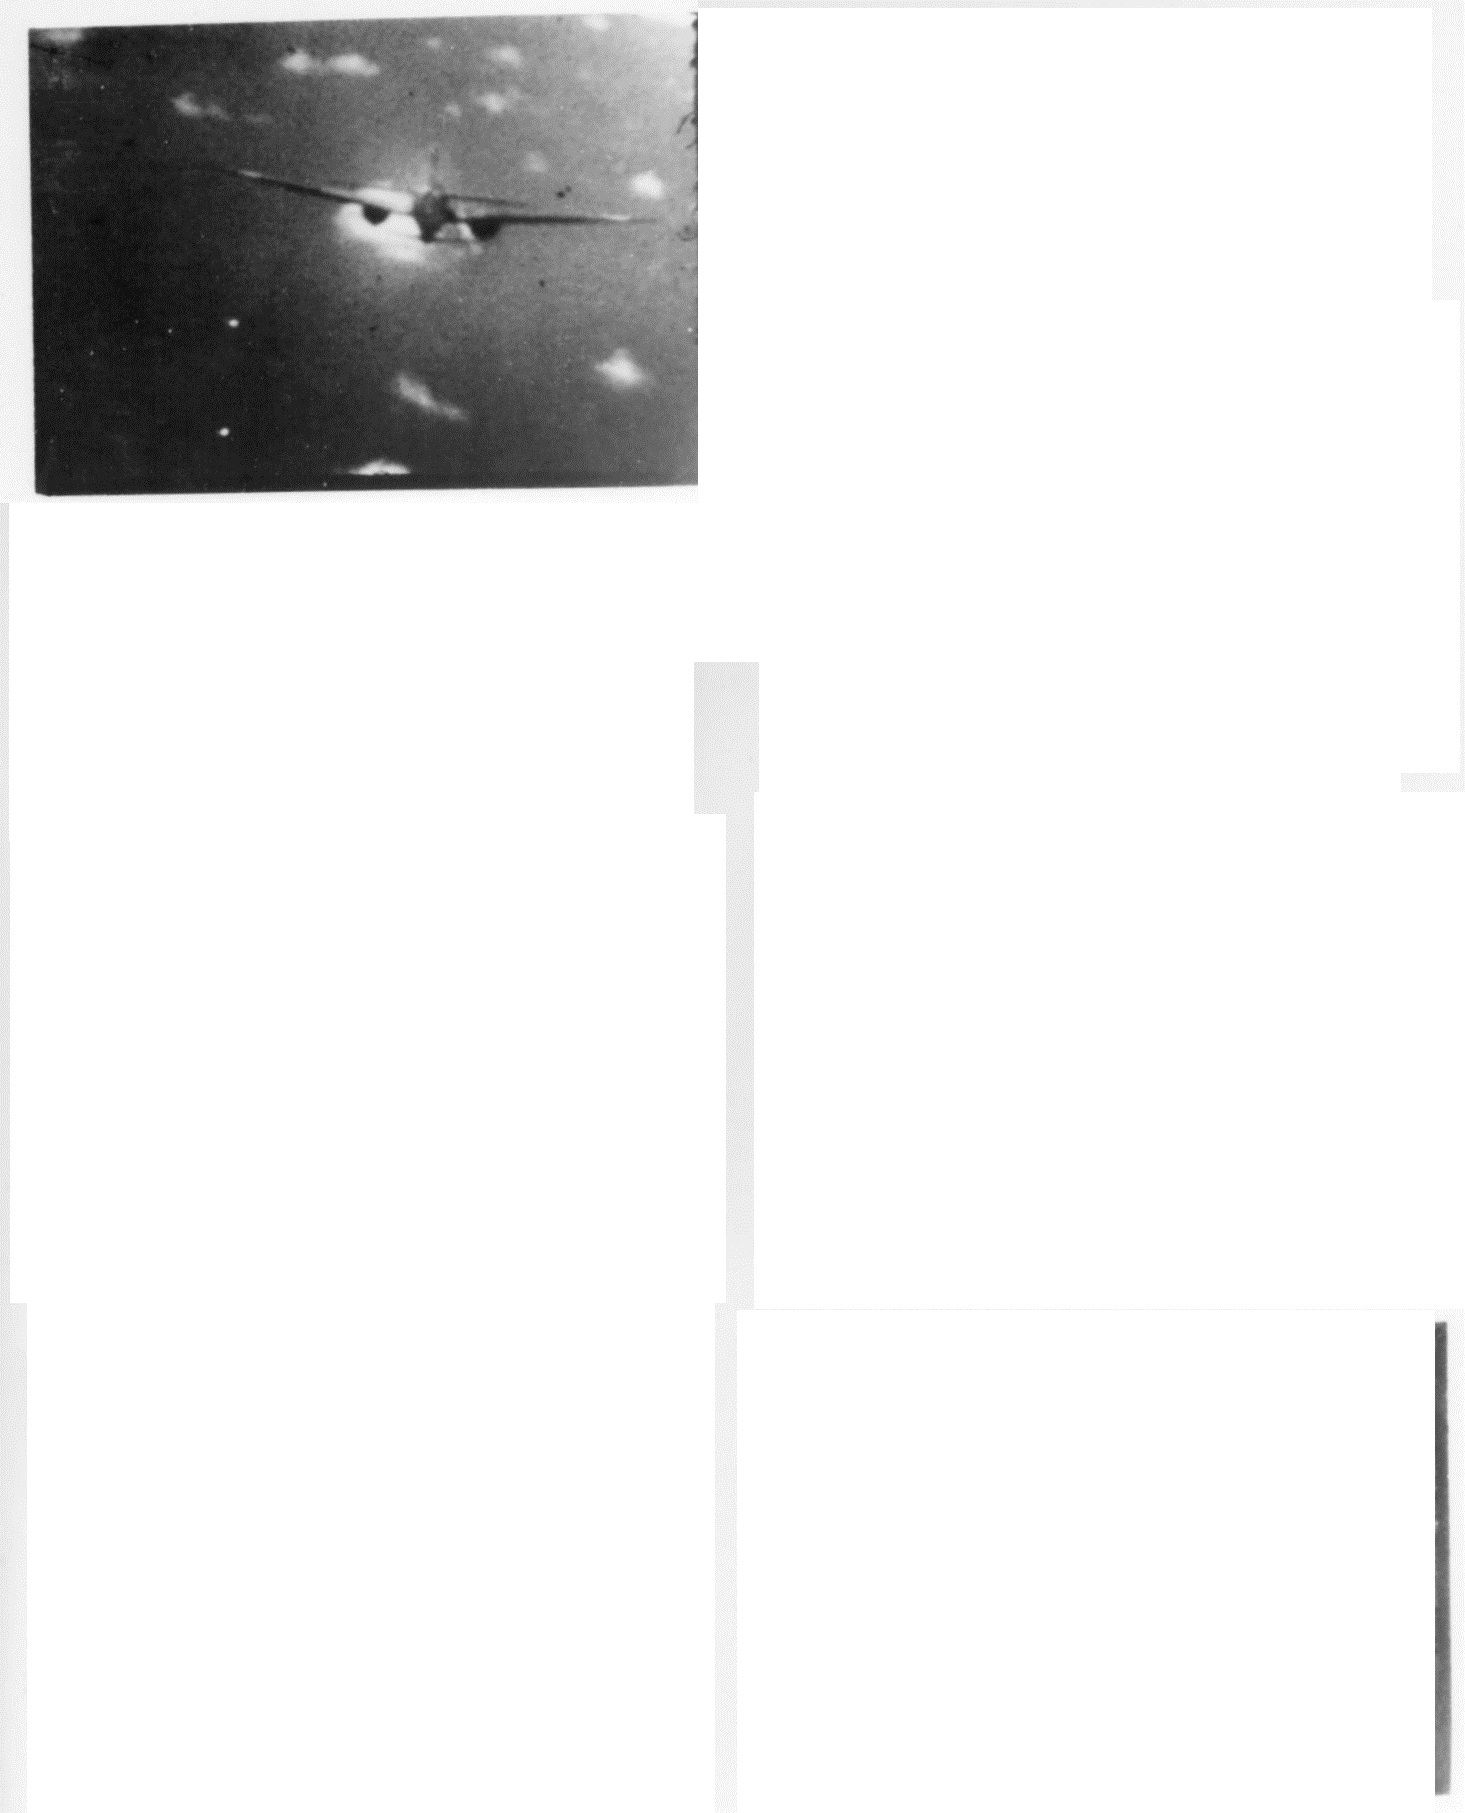 Mitsubishi_G4M2e_with_Okha_under_attack_1945.jpeg